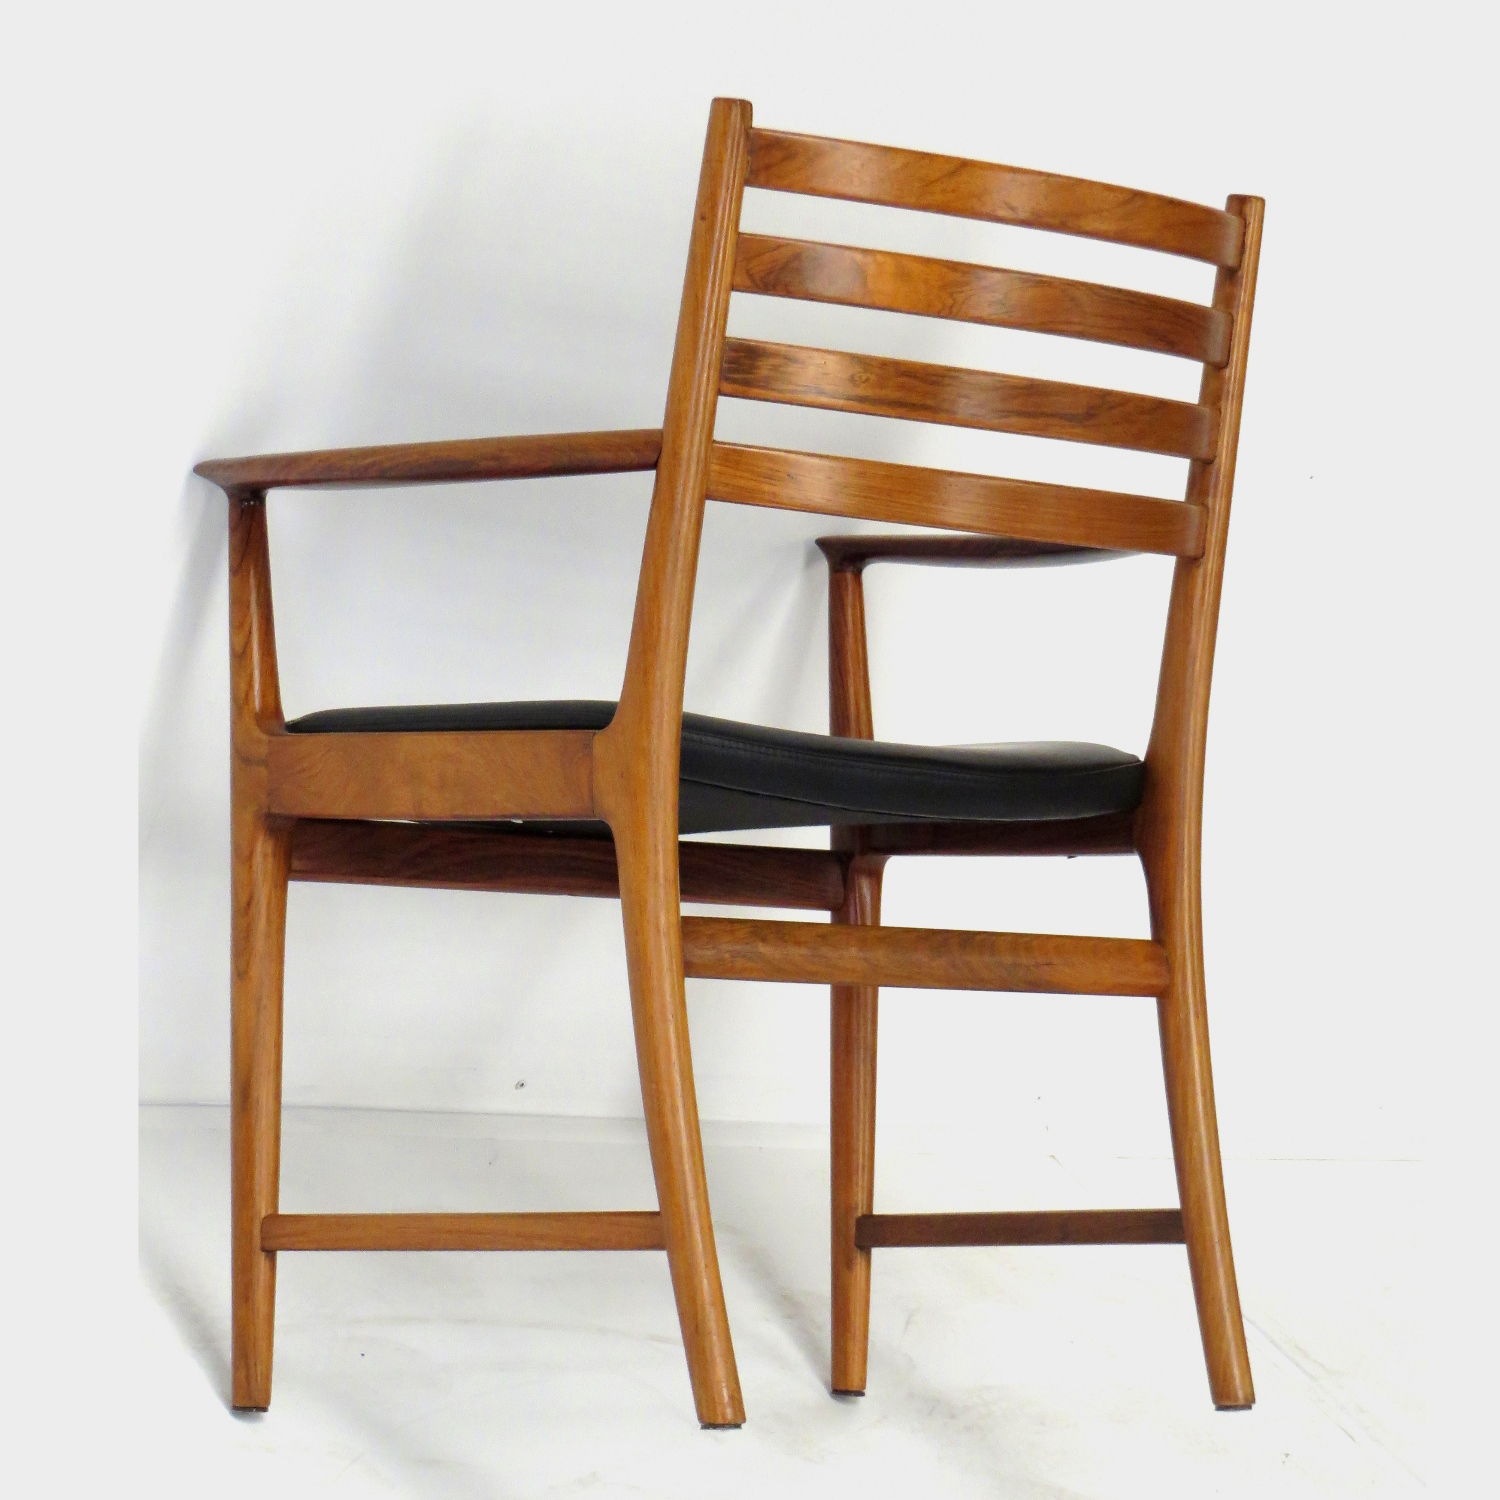 Foto van de achterkant van één van de twee palissander bureaustoelen / stoelen met armleuningen